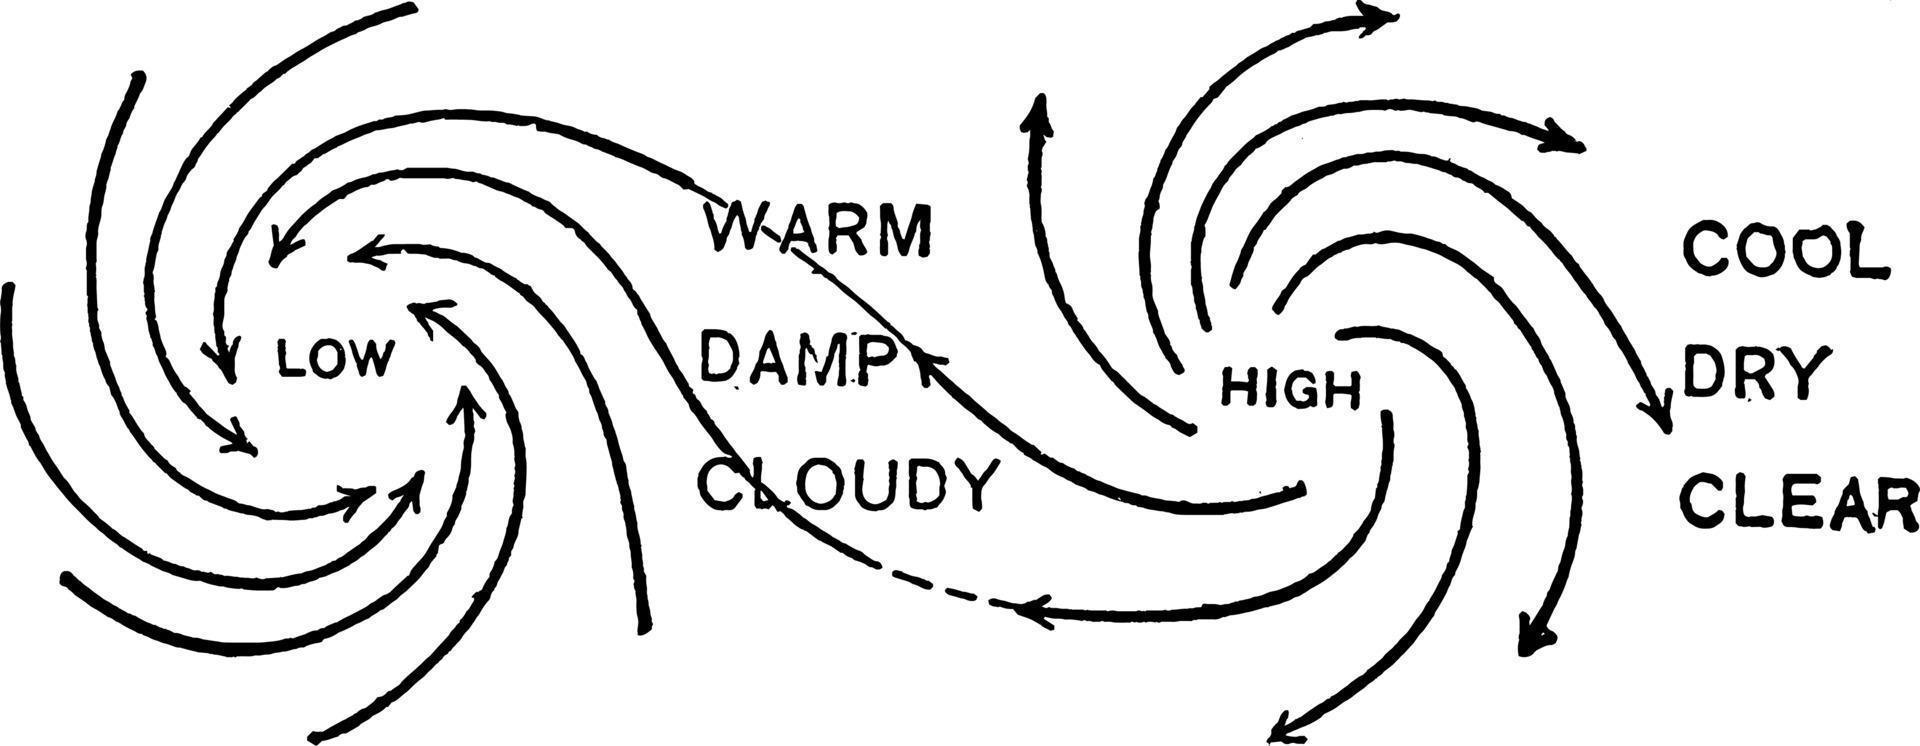 Cyclones and Anticyclones, vintage illustration vector